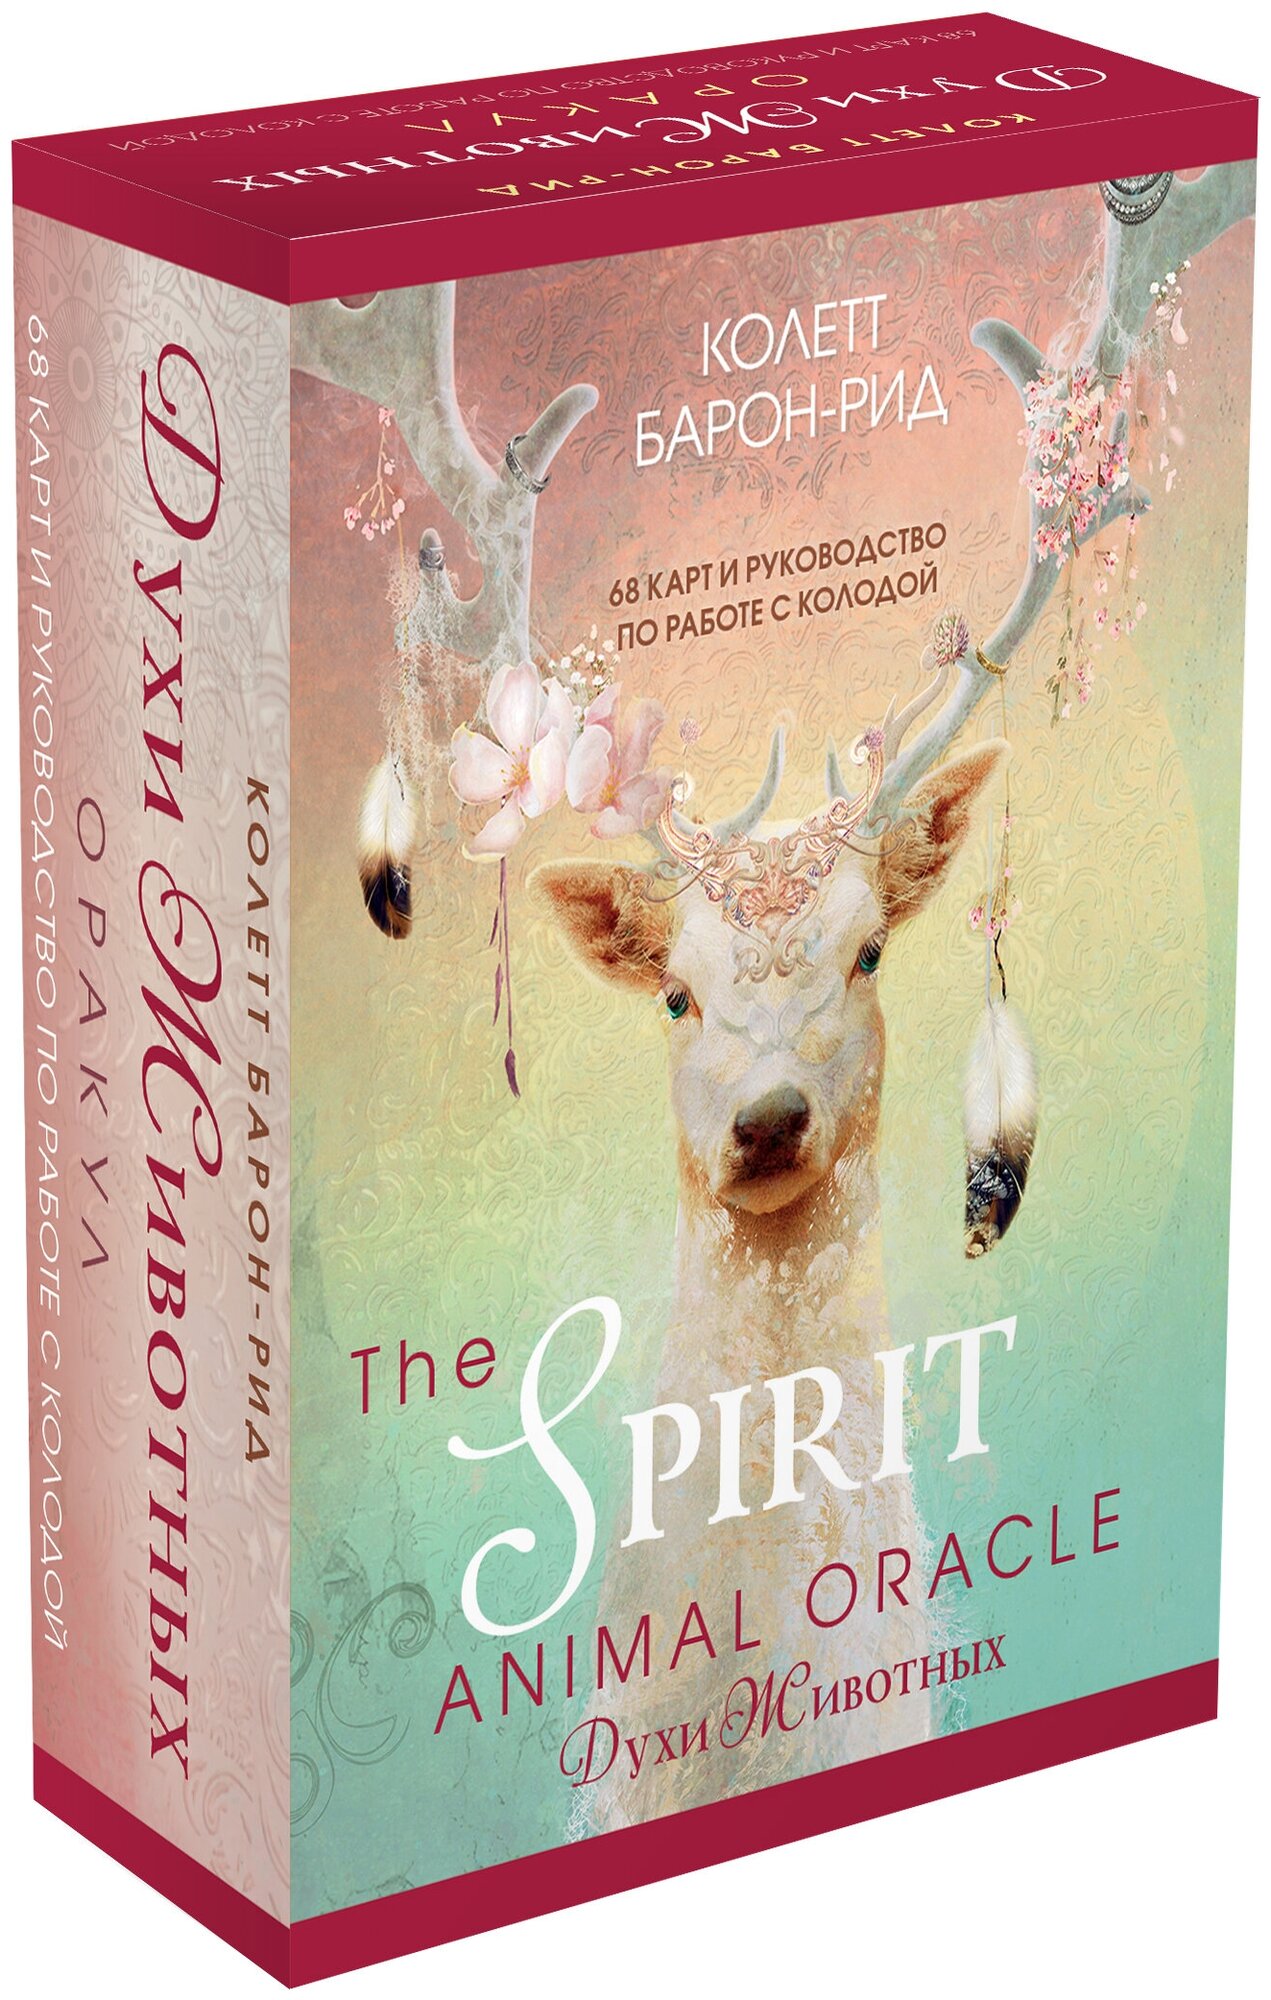 Барон-Рид К. The Spirit Animal Oracle. Духи животных. Оракул (68 карт и руководство в подарочном оформлении) - фотография № 4